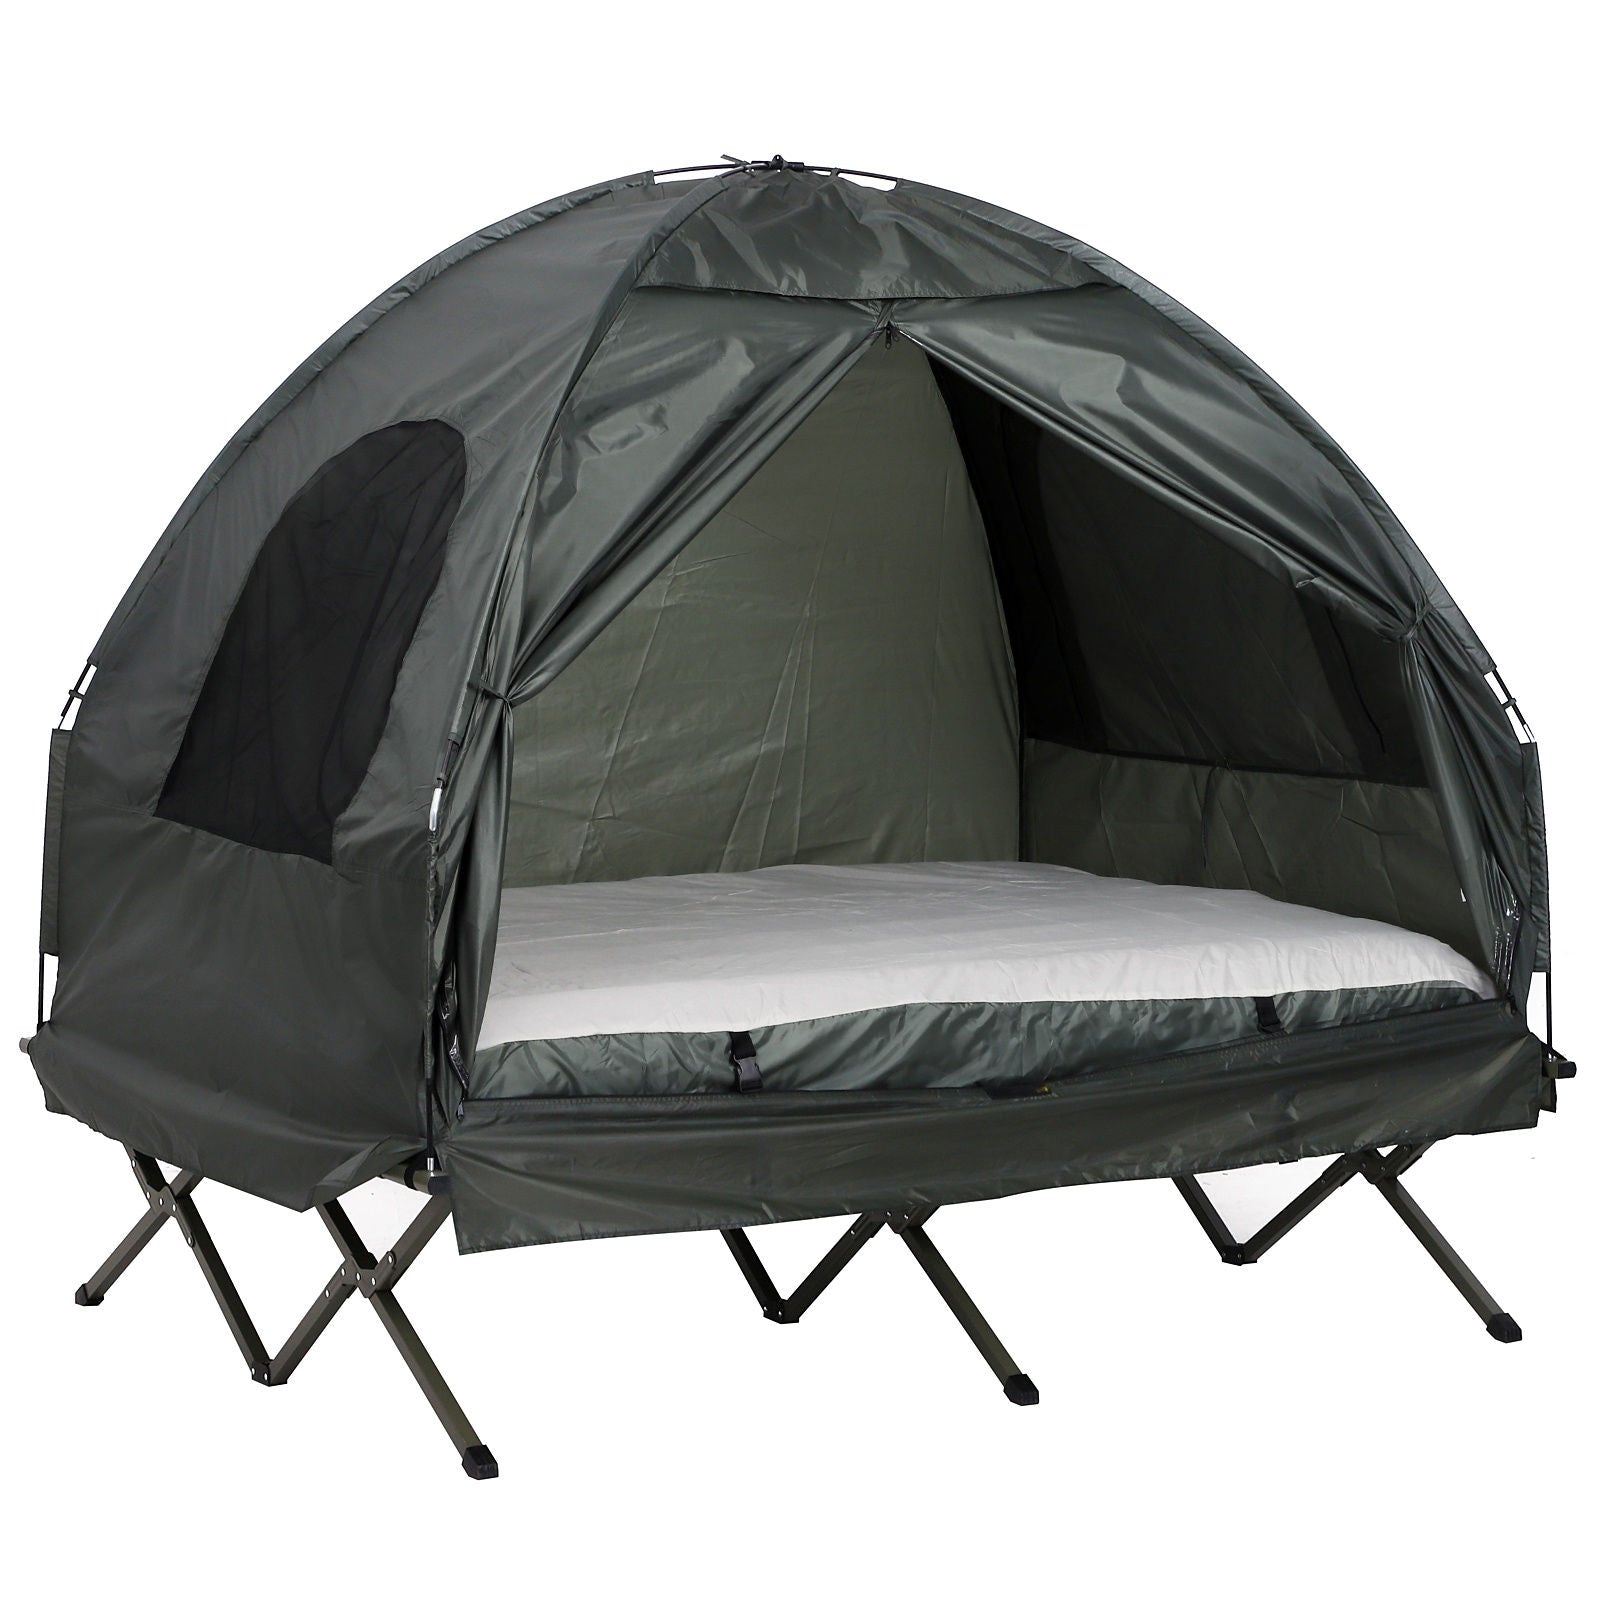 Nancy's Pacbitun Kampeertent - Camping tent - Met 2 Persoons Matras  Groen - ± 195 x 145 x 180 cm